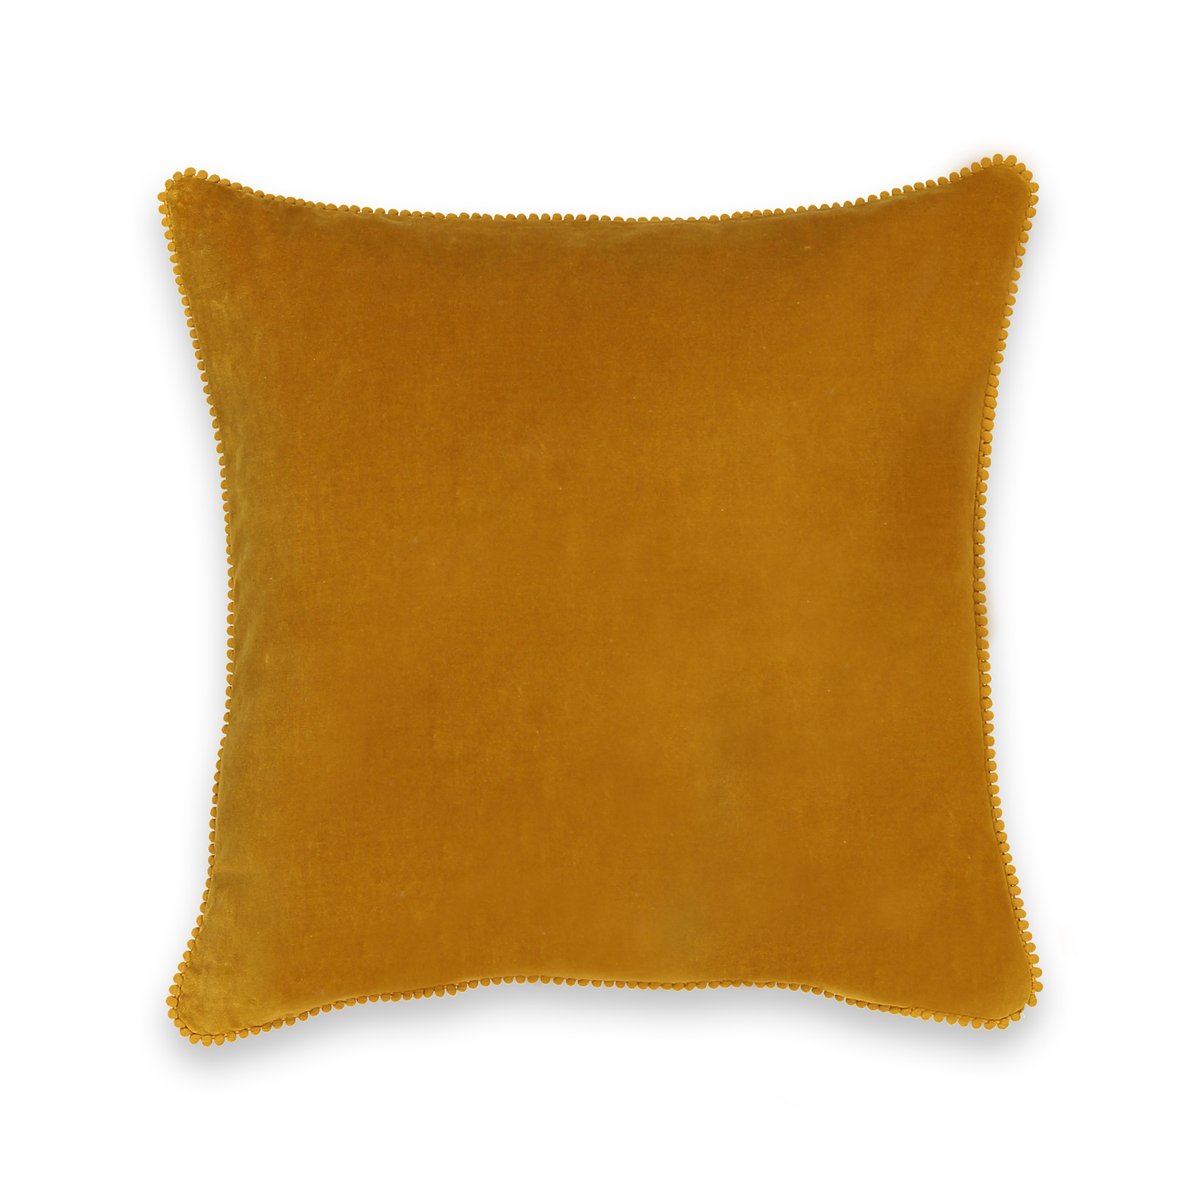 Чехол La Redoute На подушку из велюра VELVET 45 x 45 см желтый, размер 45 x 45 см - фото 2